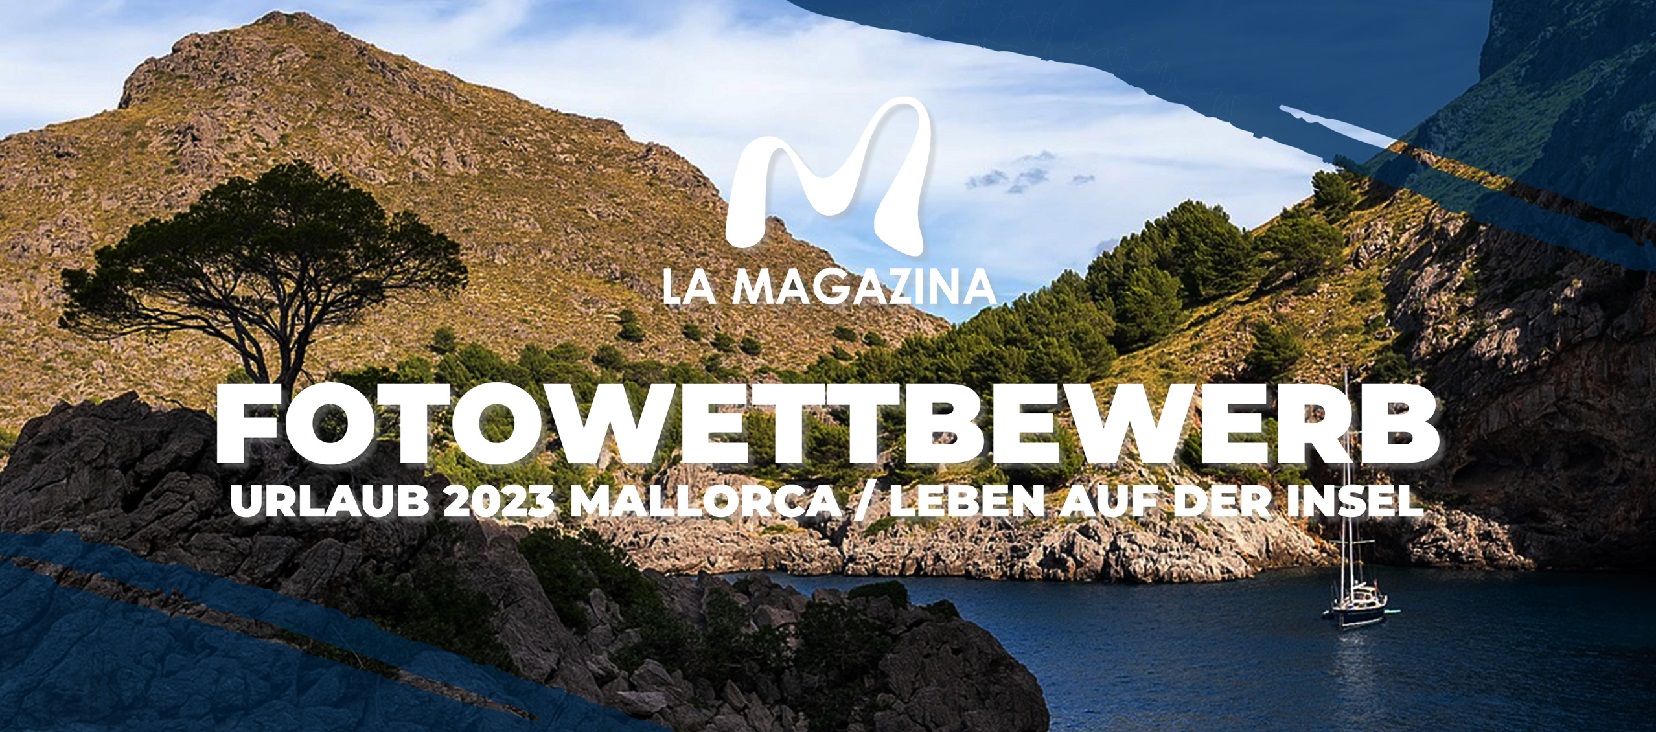 LAMAGAZINA FOTOWETTBEWERB 2023 | Mallorca Online Magazin | LaMagazina